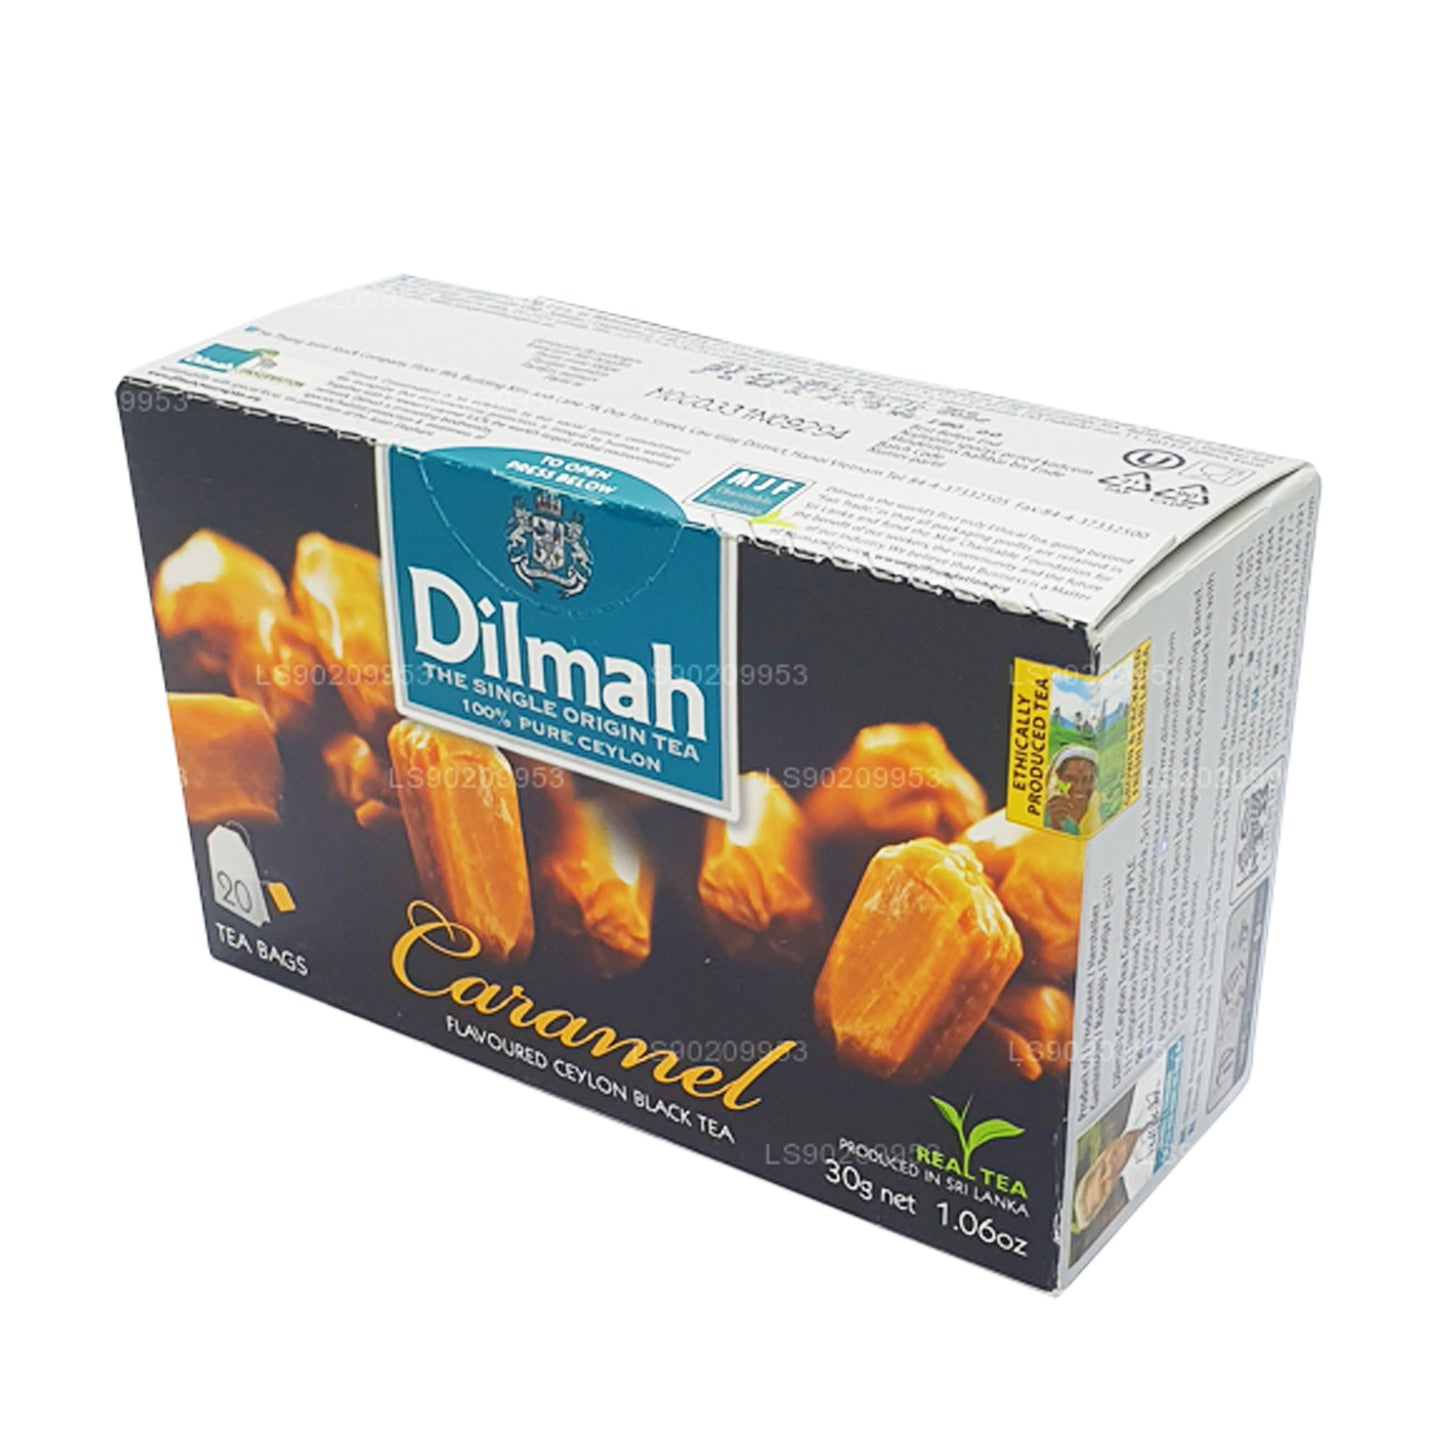 Té Dilmah con sabor a caramelo (40 g) 20 bolsitas de té